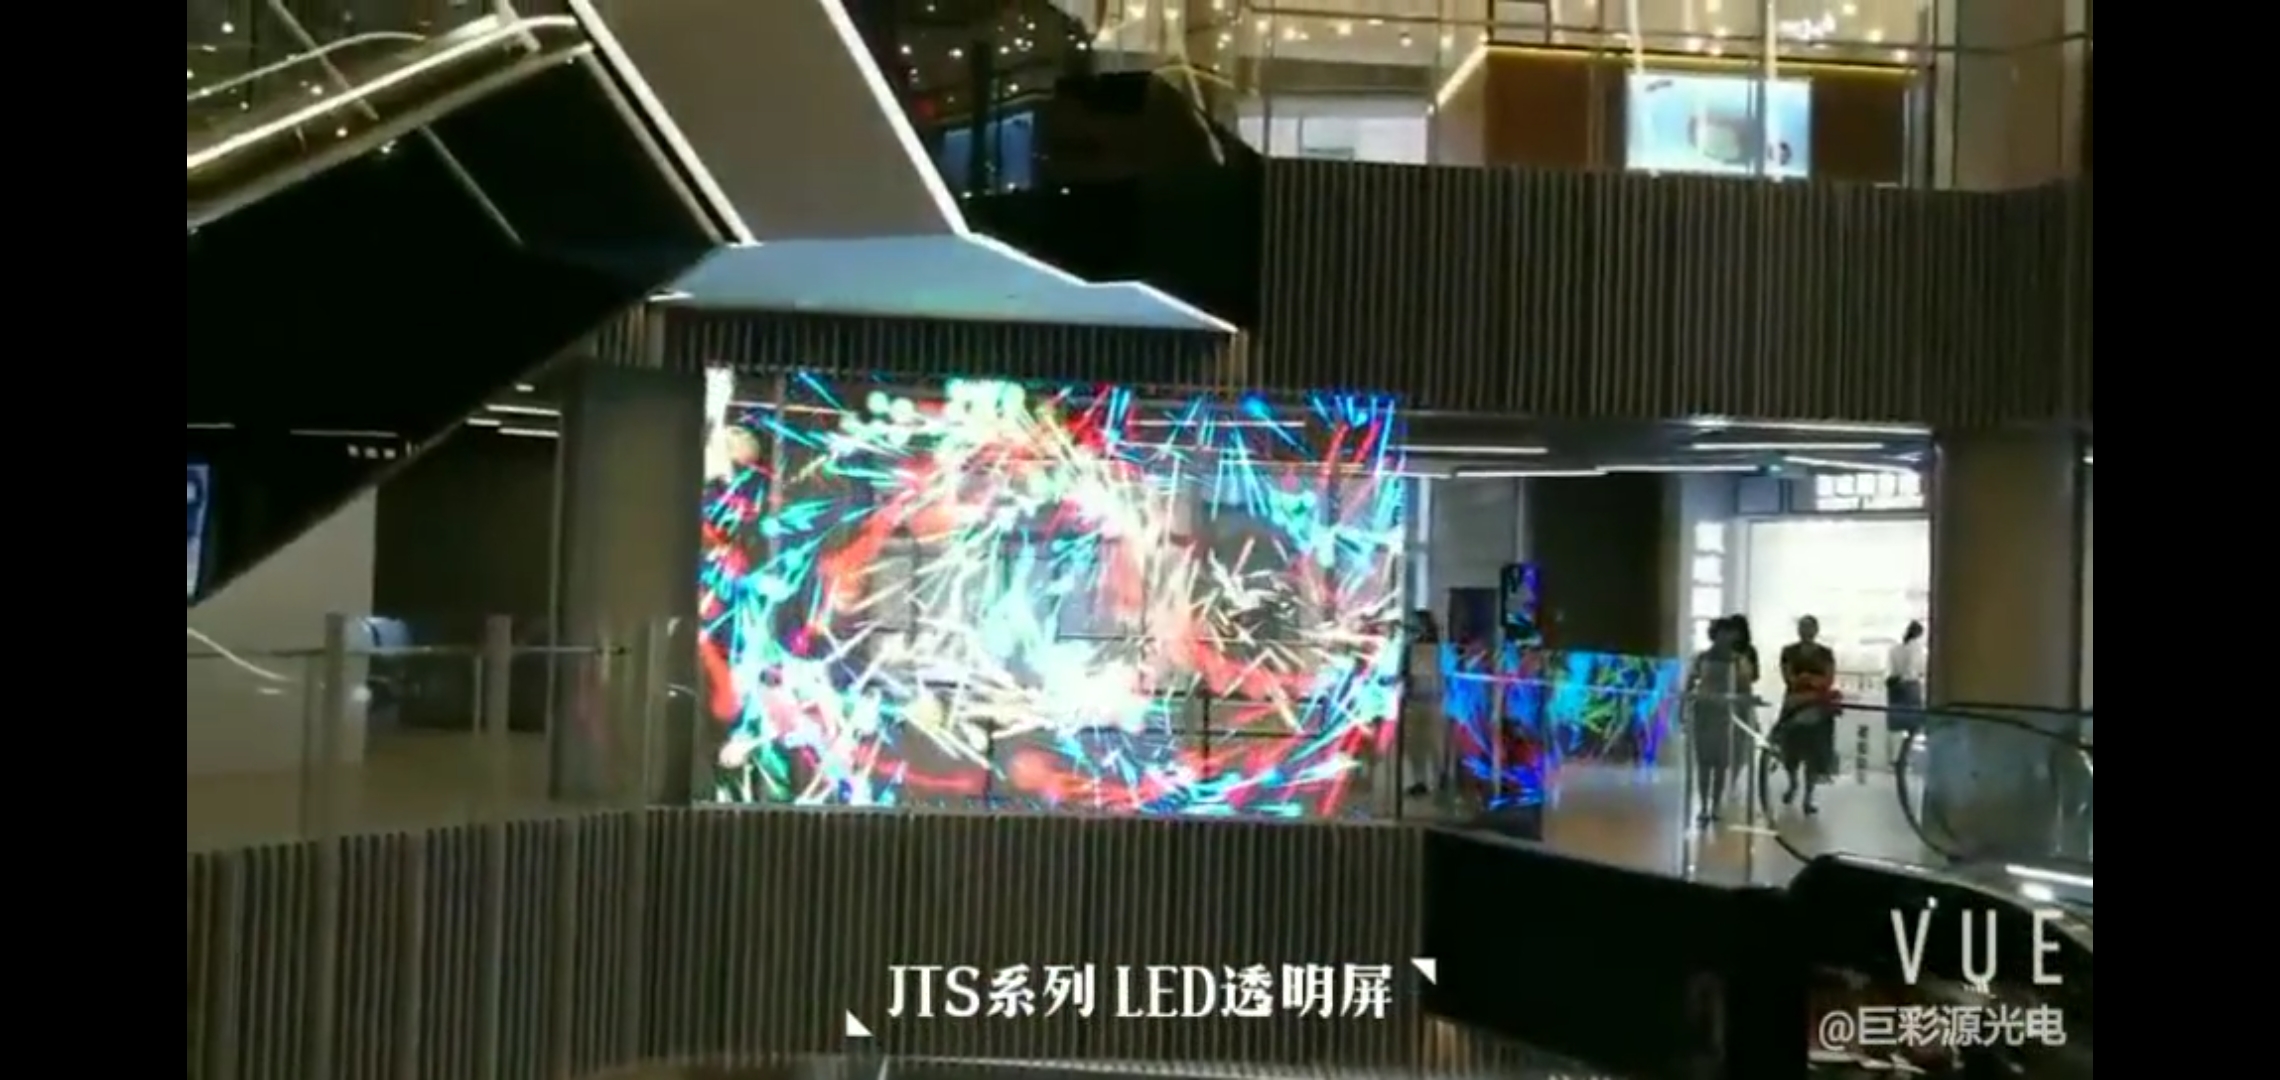 上海某商場led透明屏